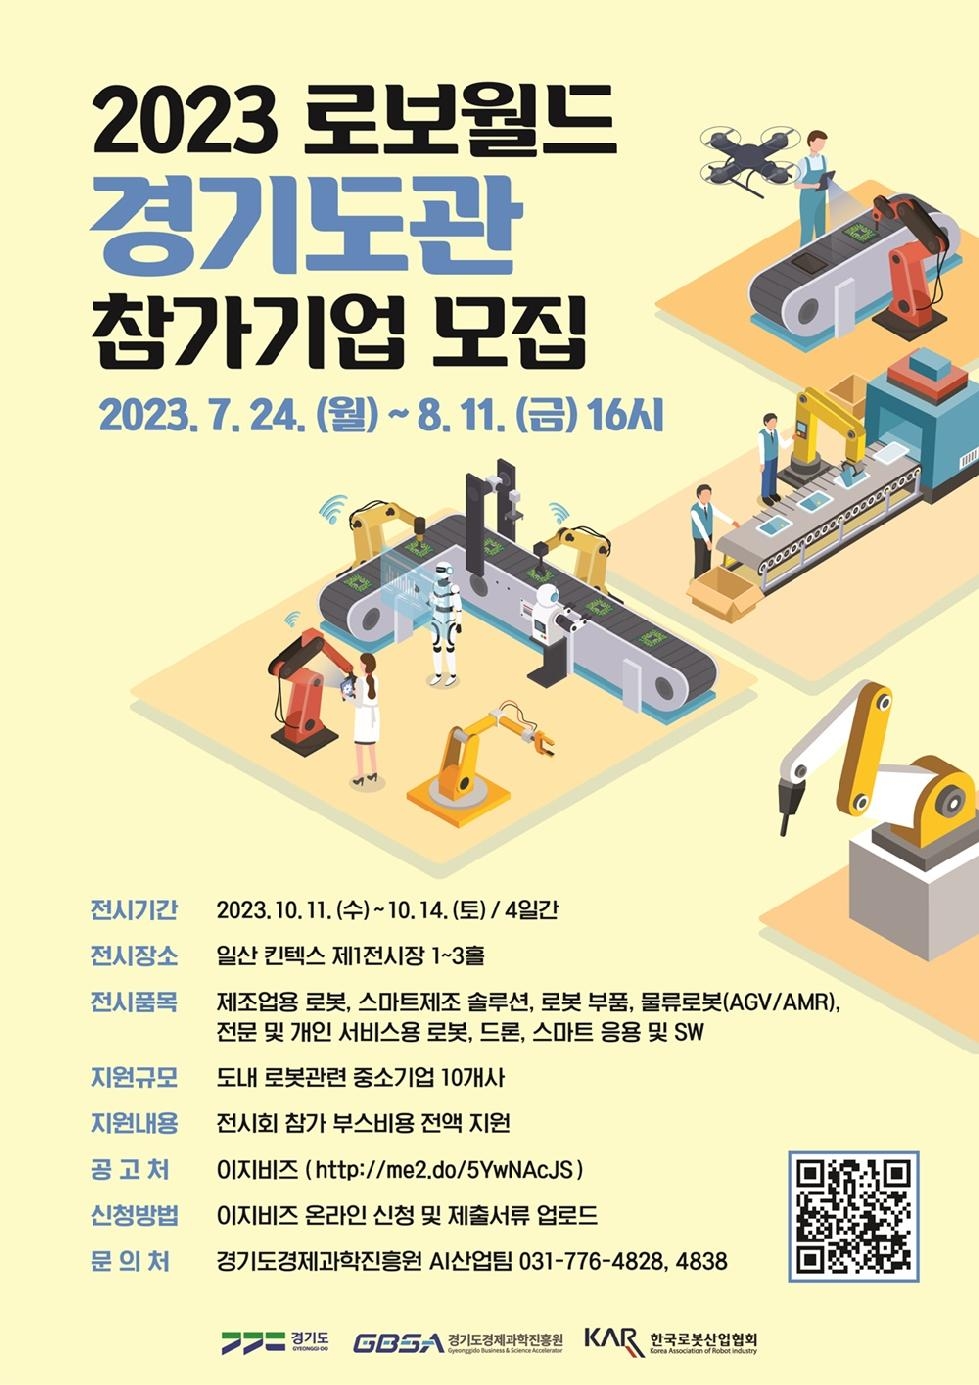 경기도, 국내 최대규모 로봇전시회 ‘2023 로보월드’ 경기도관 참가기업 모집